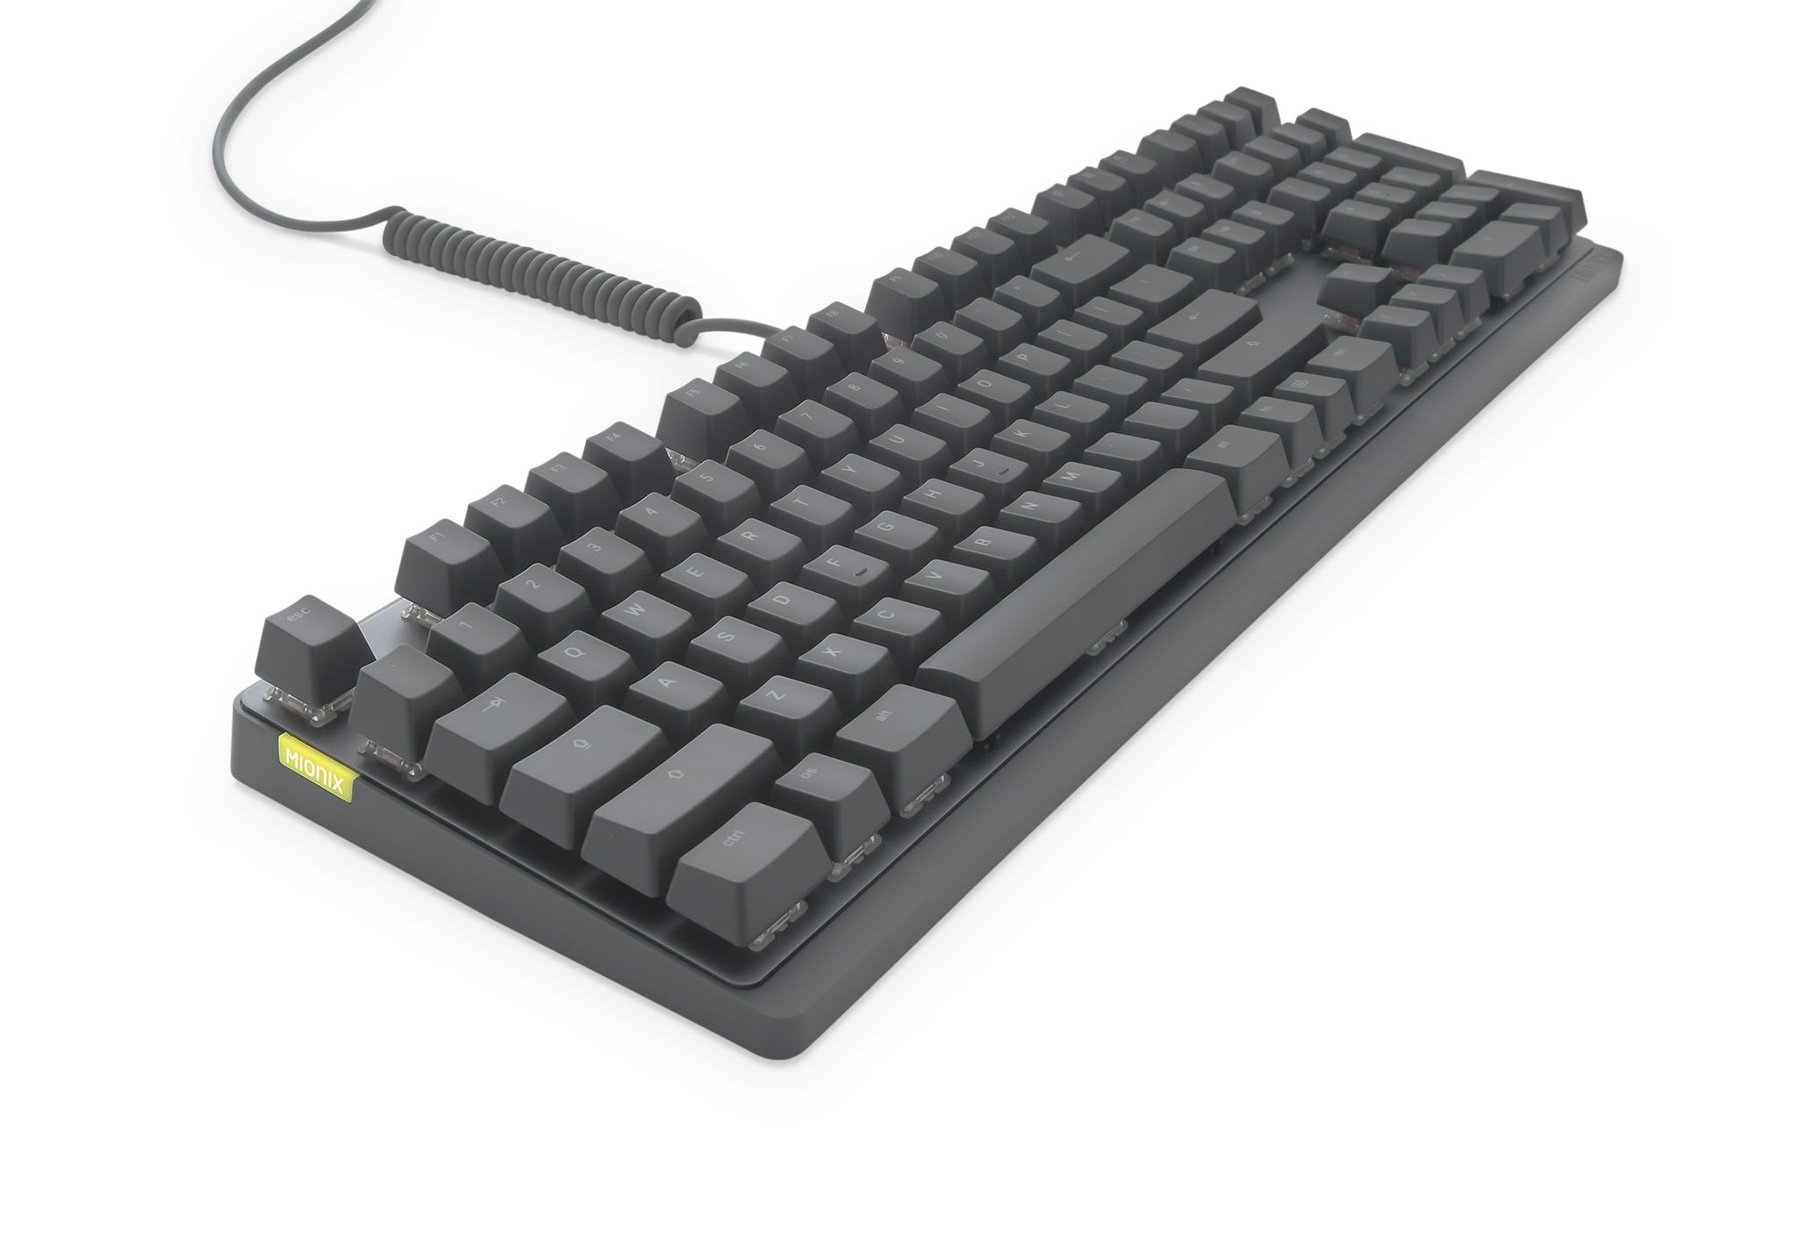 Mionix Wei keyboard USB QWERTY UK English Black